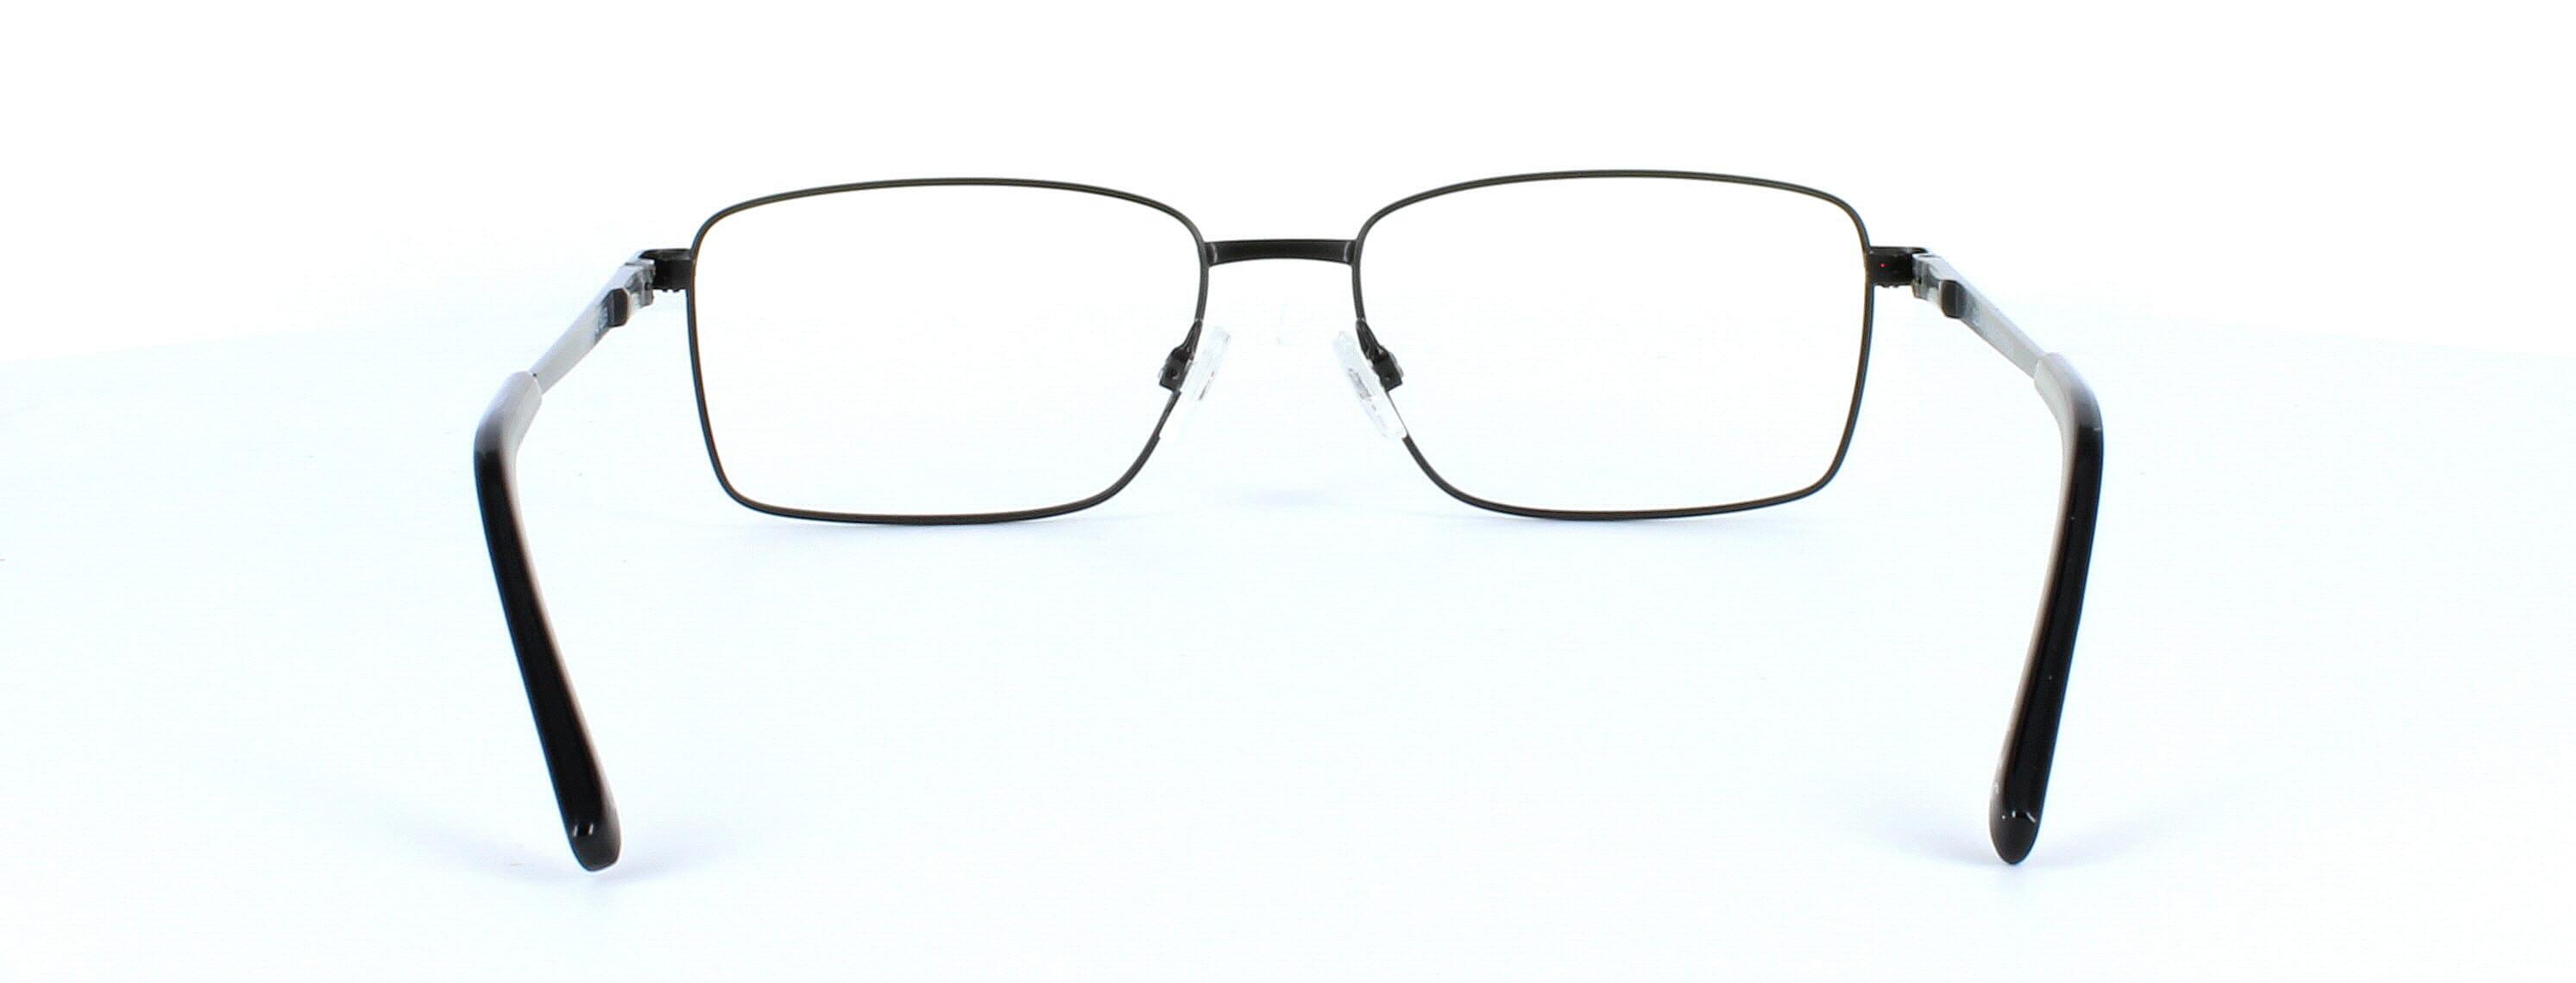 Tommy - Gent's full rim rectangular glasses frame here presented in matt black - image view 3